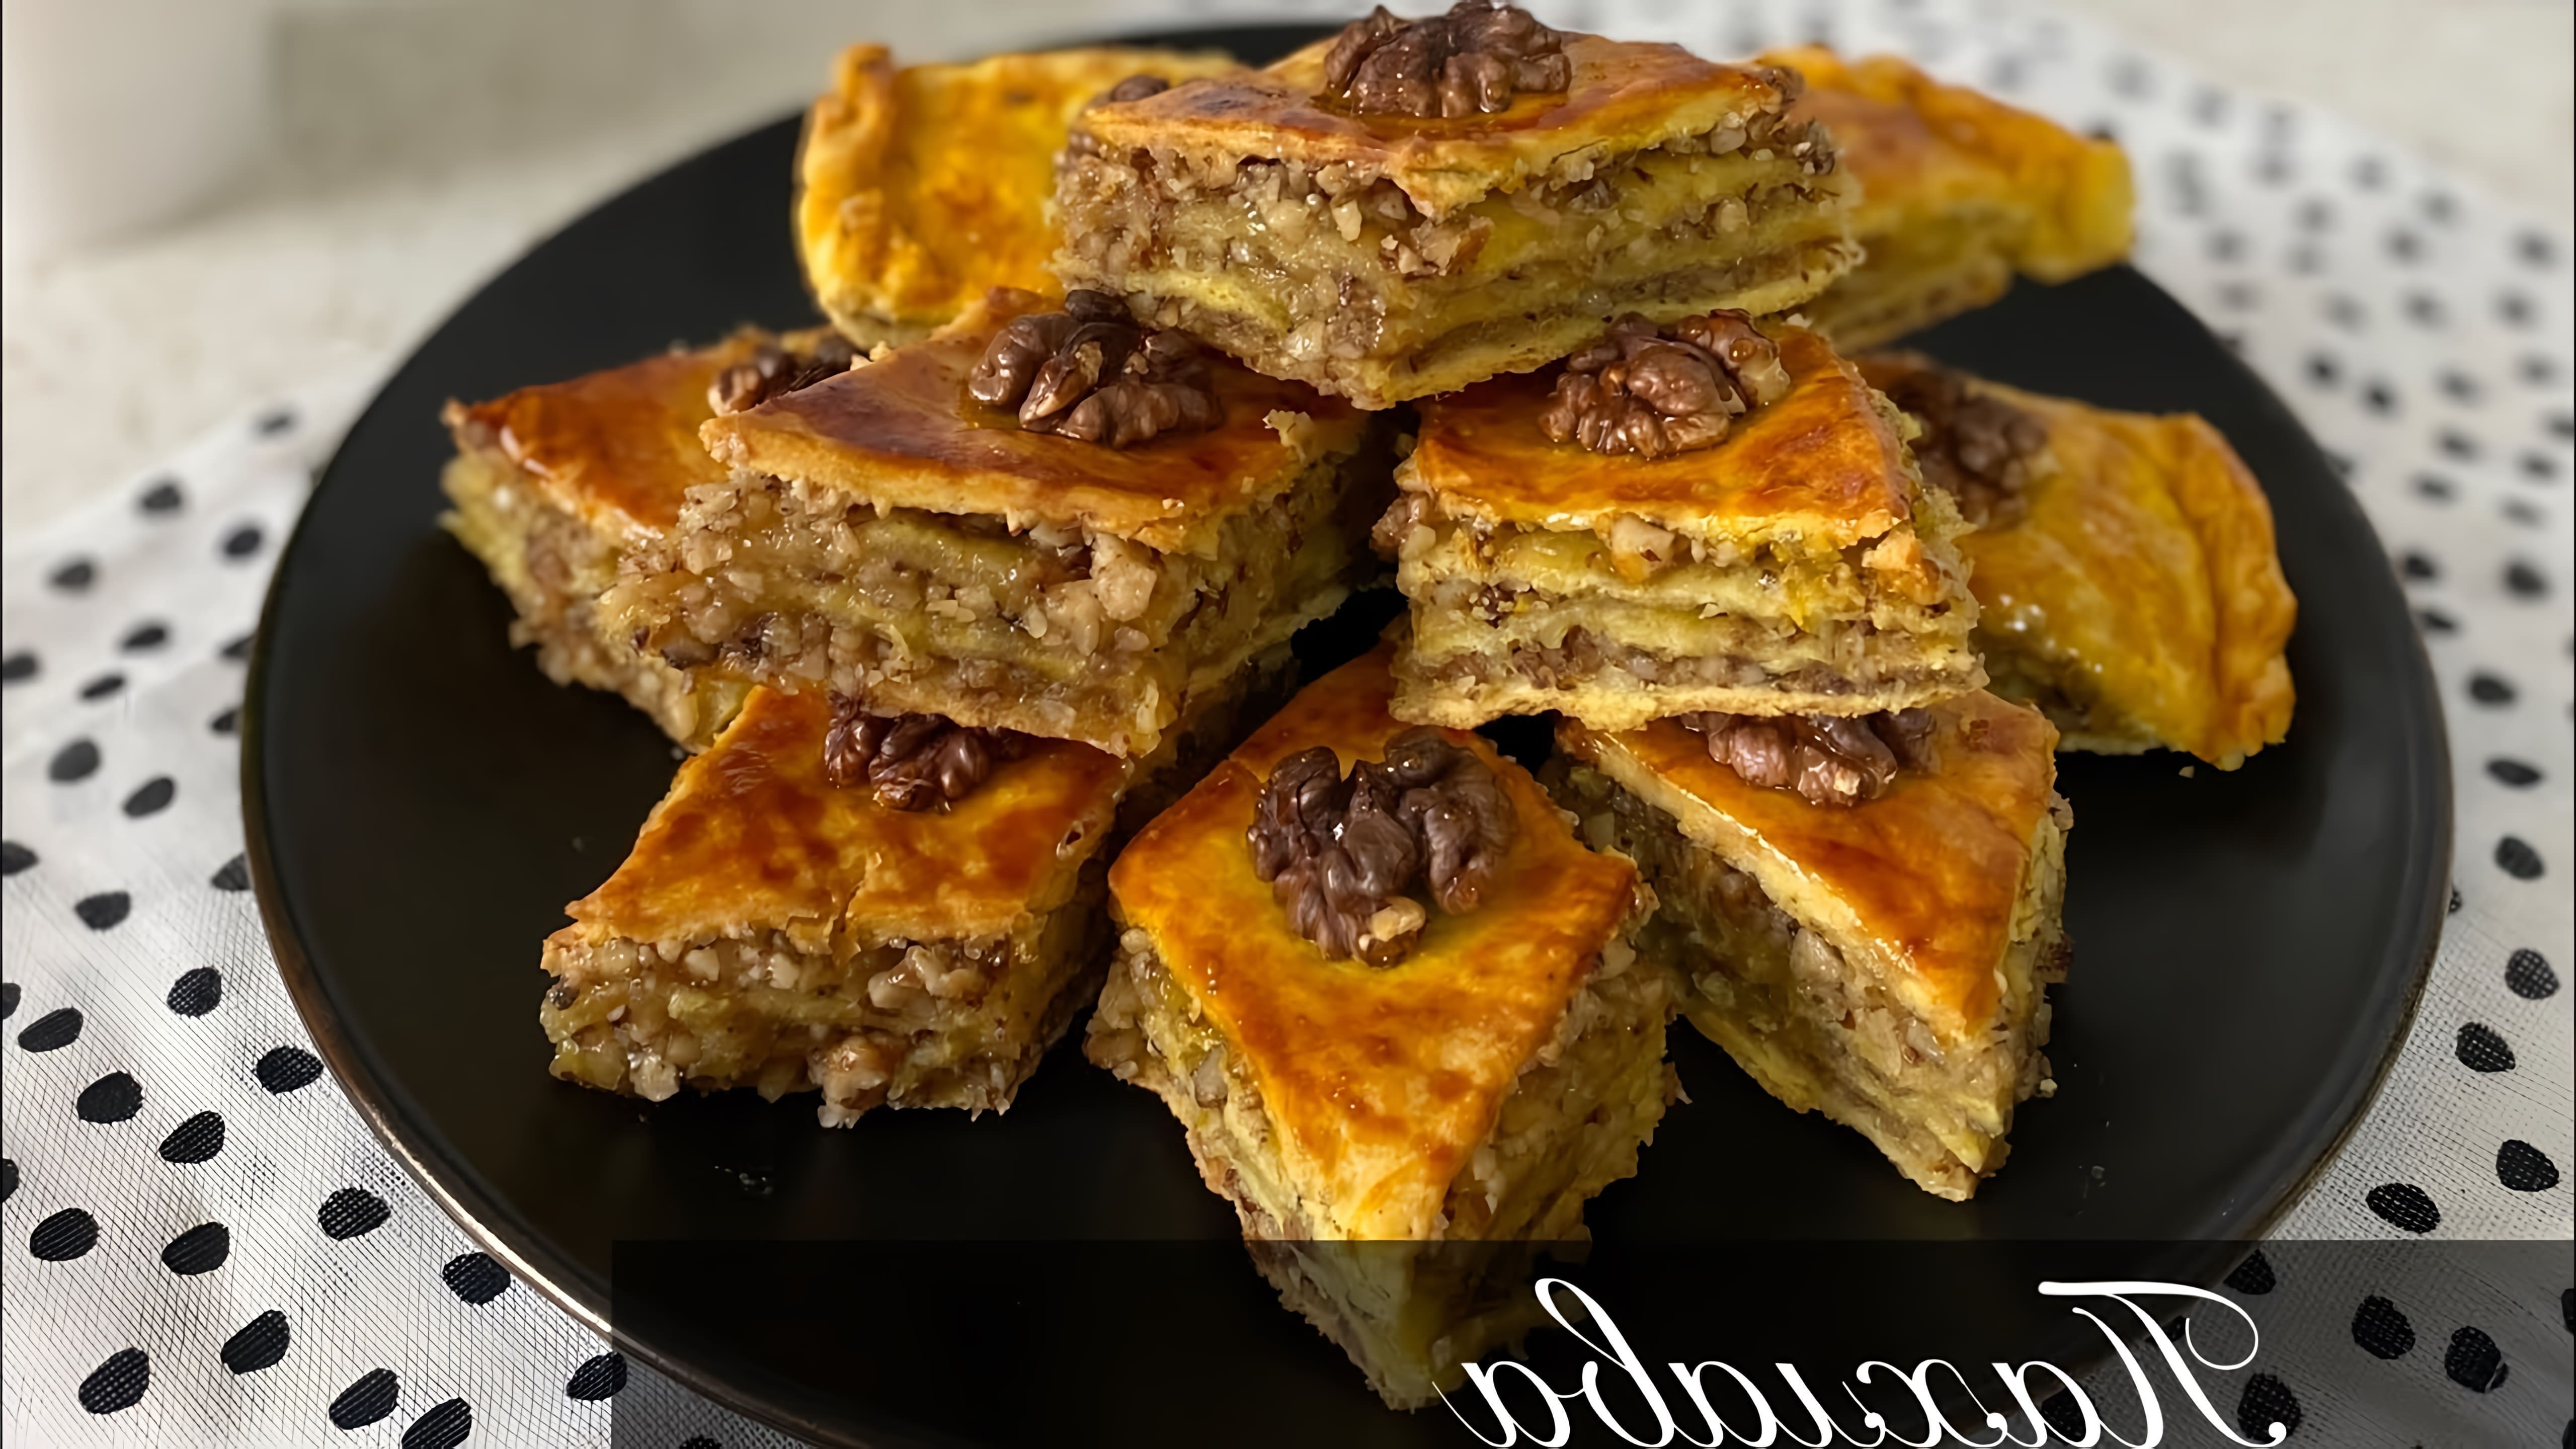 В данном видео демонстрируется процесс приготовления пахлавы - традиционного турецкого десерта